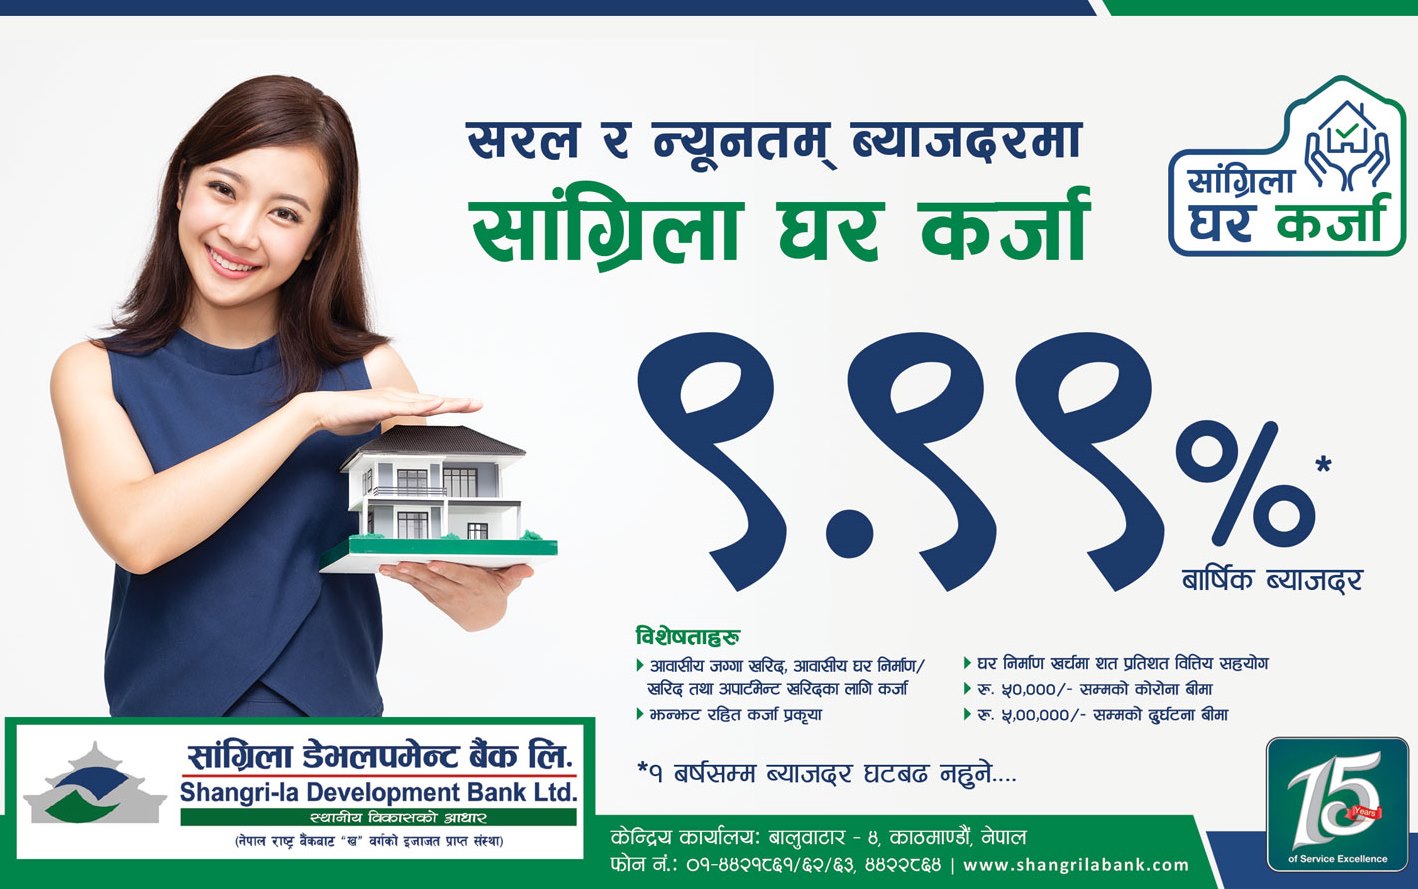 सांग्रिला डेभलपमेन्ट बैंक ९.९९ प्रतिशत व्याजदरमा घर कर्जा योजना